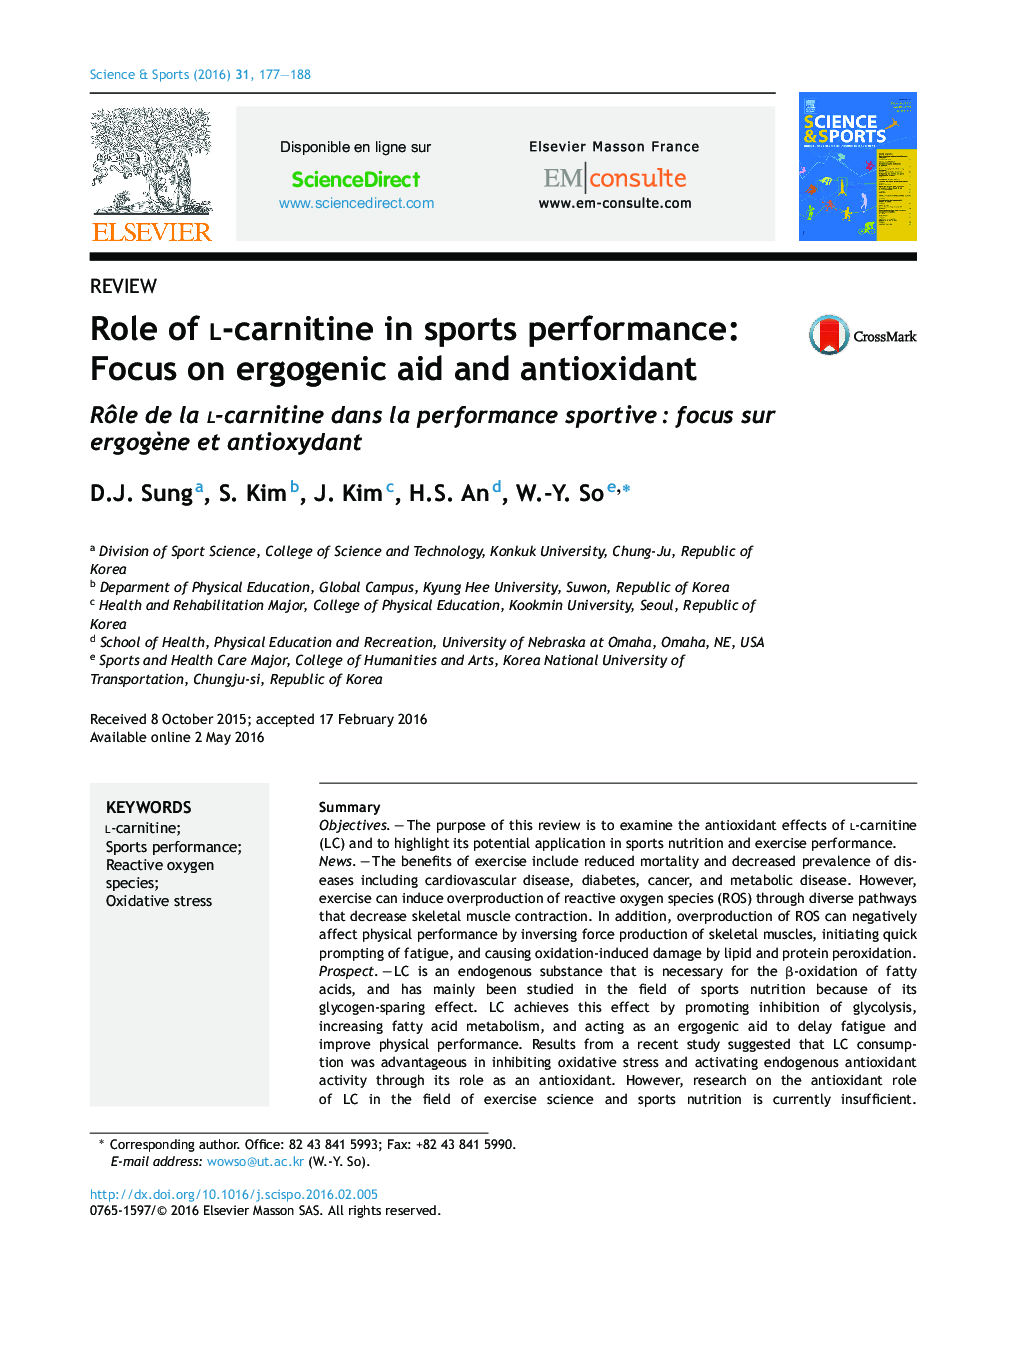 نقش ال کارنیتین در عملکرد ورزشی: تمرکز بر کمک های ارگونومیک و آنتی اکسیدان ها 